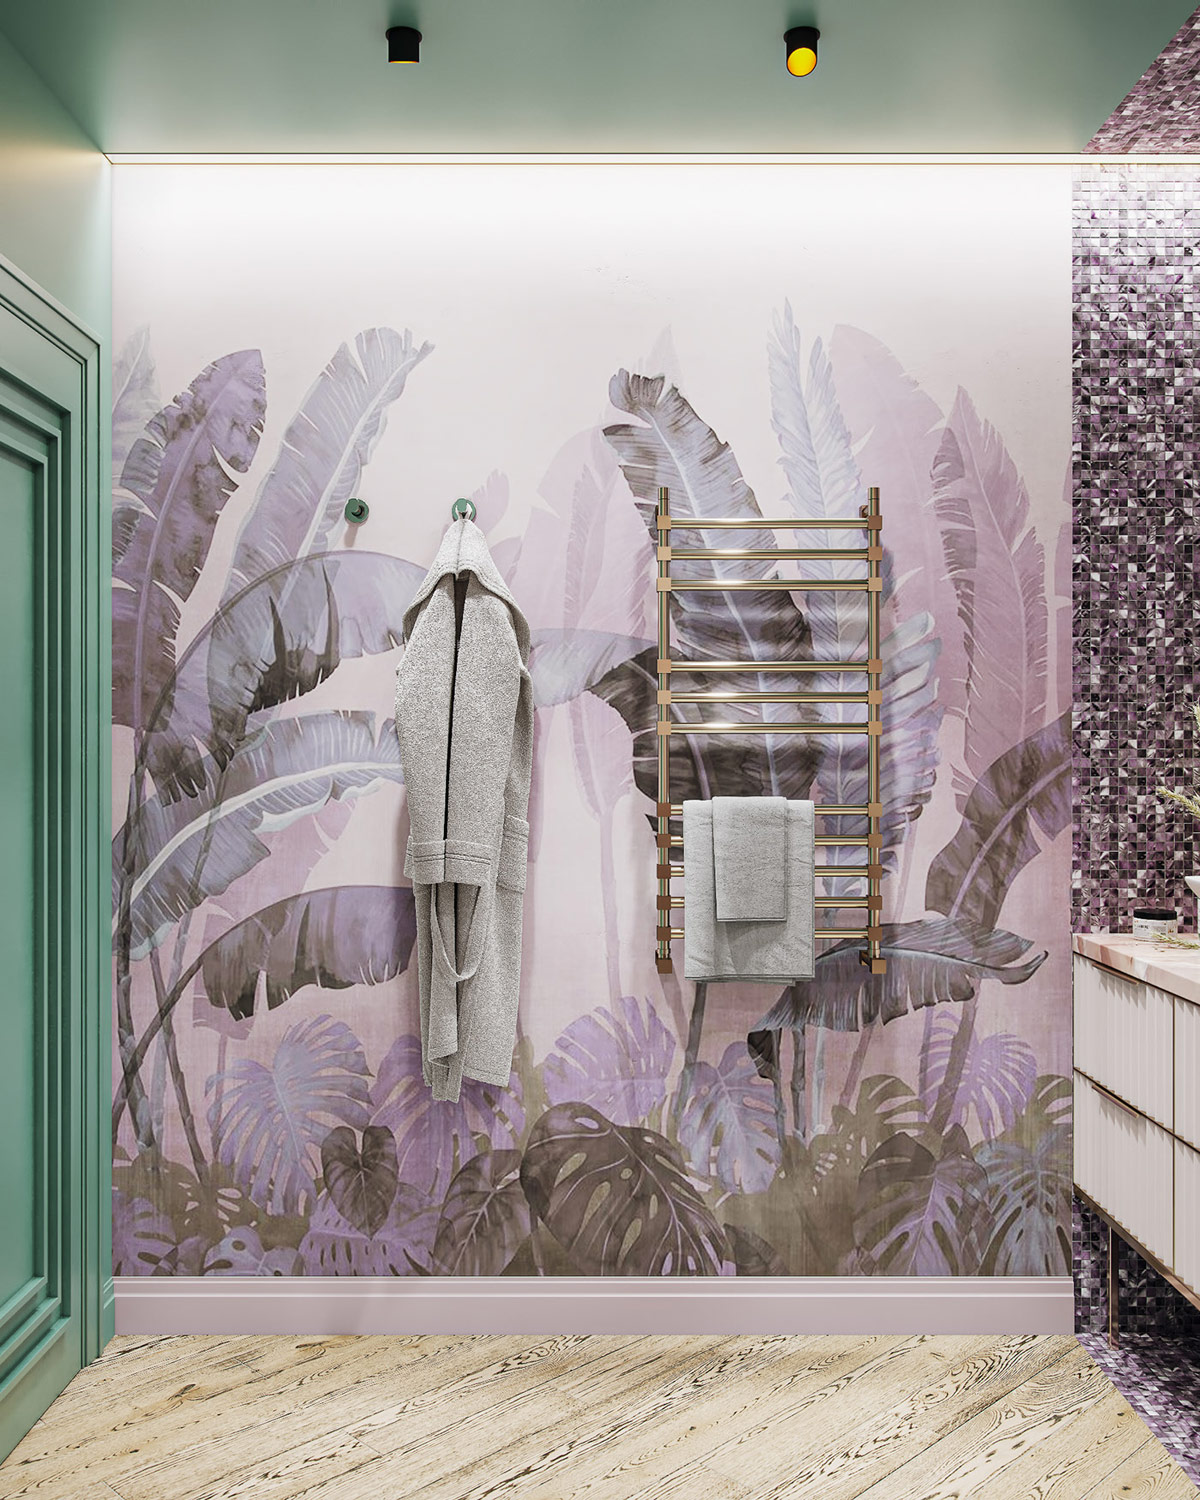 Hình ảnh cận cảnh bức tường họa tiết lá chuối trong phòng tắm